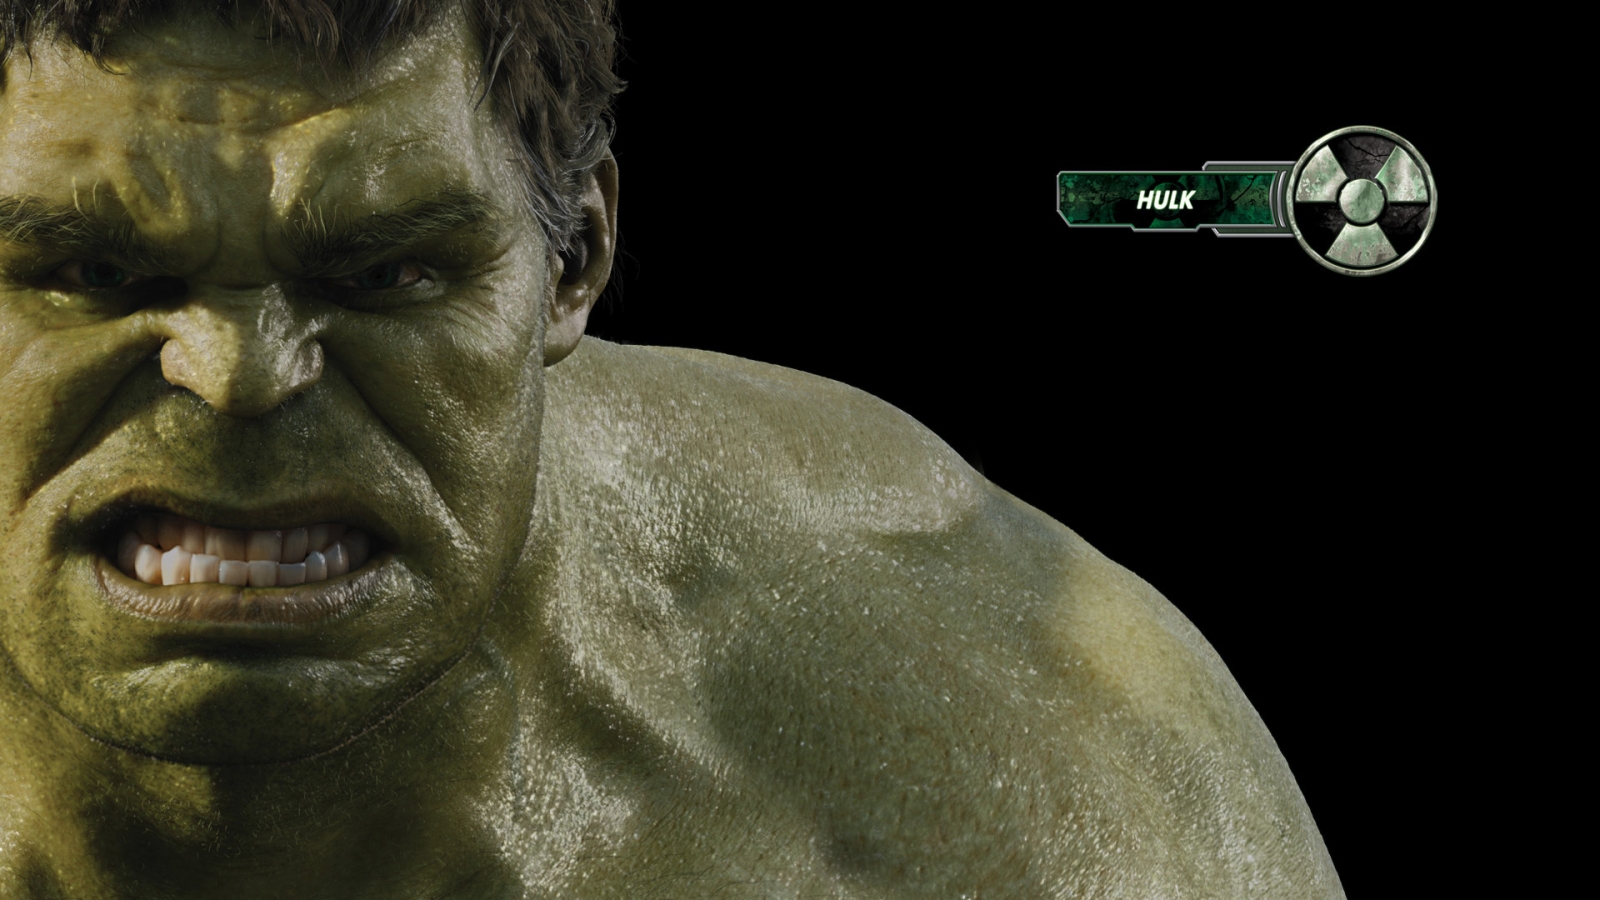 The Avengers Hulk for 1600 x 900 HDTV resolution